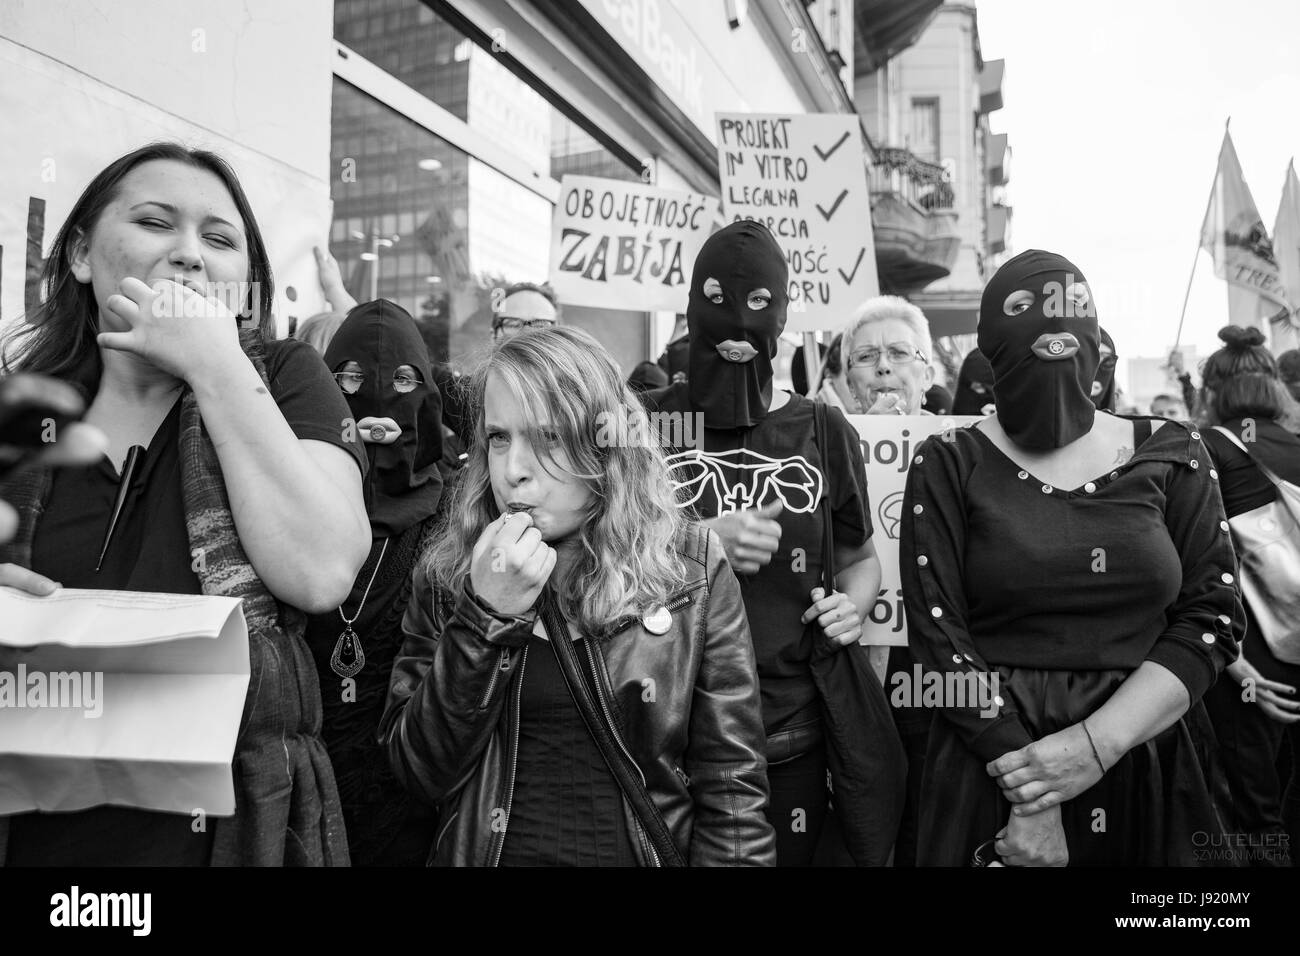 Le proteste in Polonia contro il divieto totale di aborto, nero protesta per i diritti delle donne, le donne a protestare. 2016 Poznan. Foto Stock